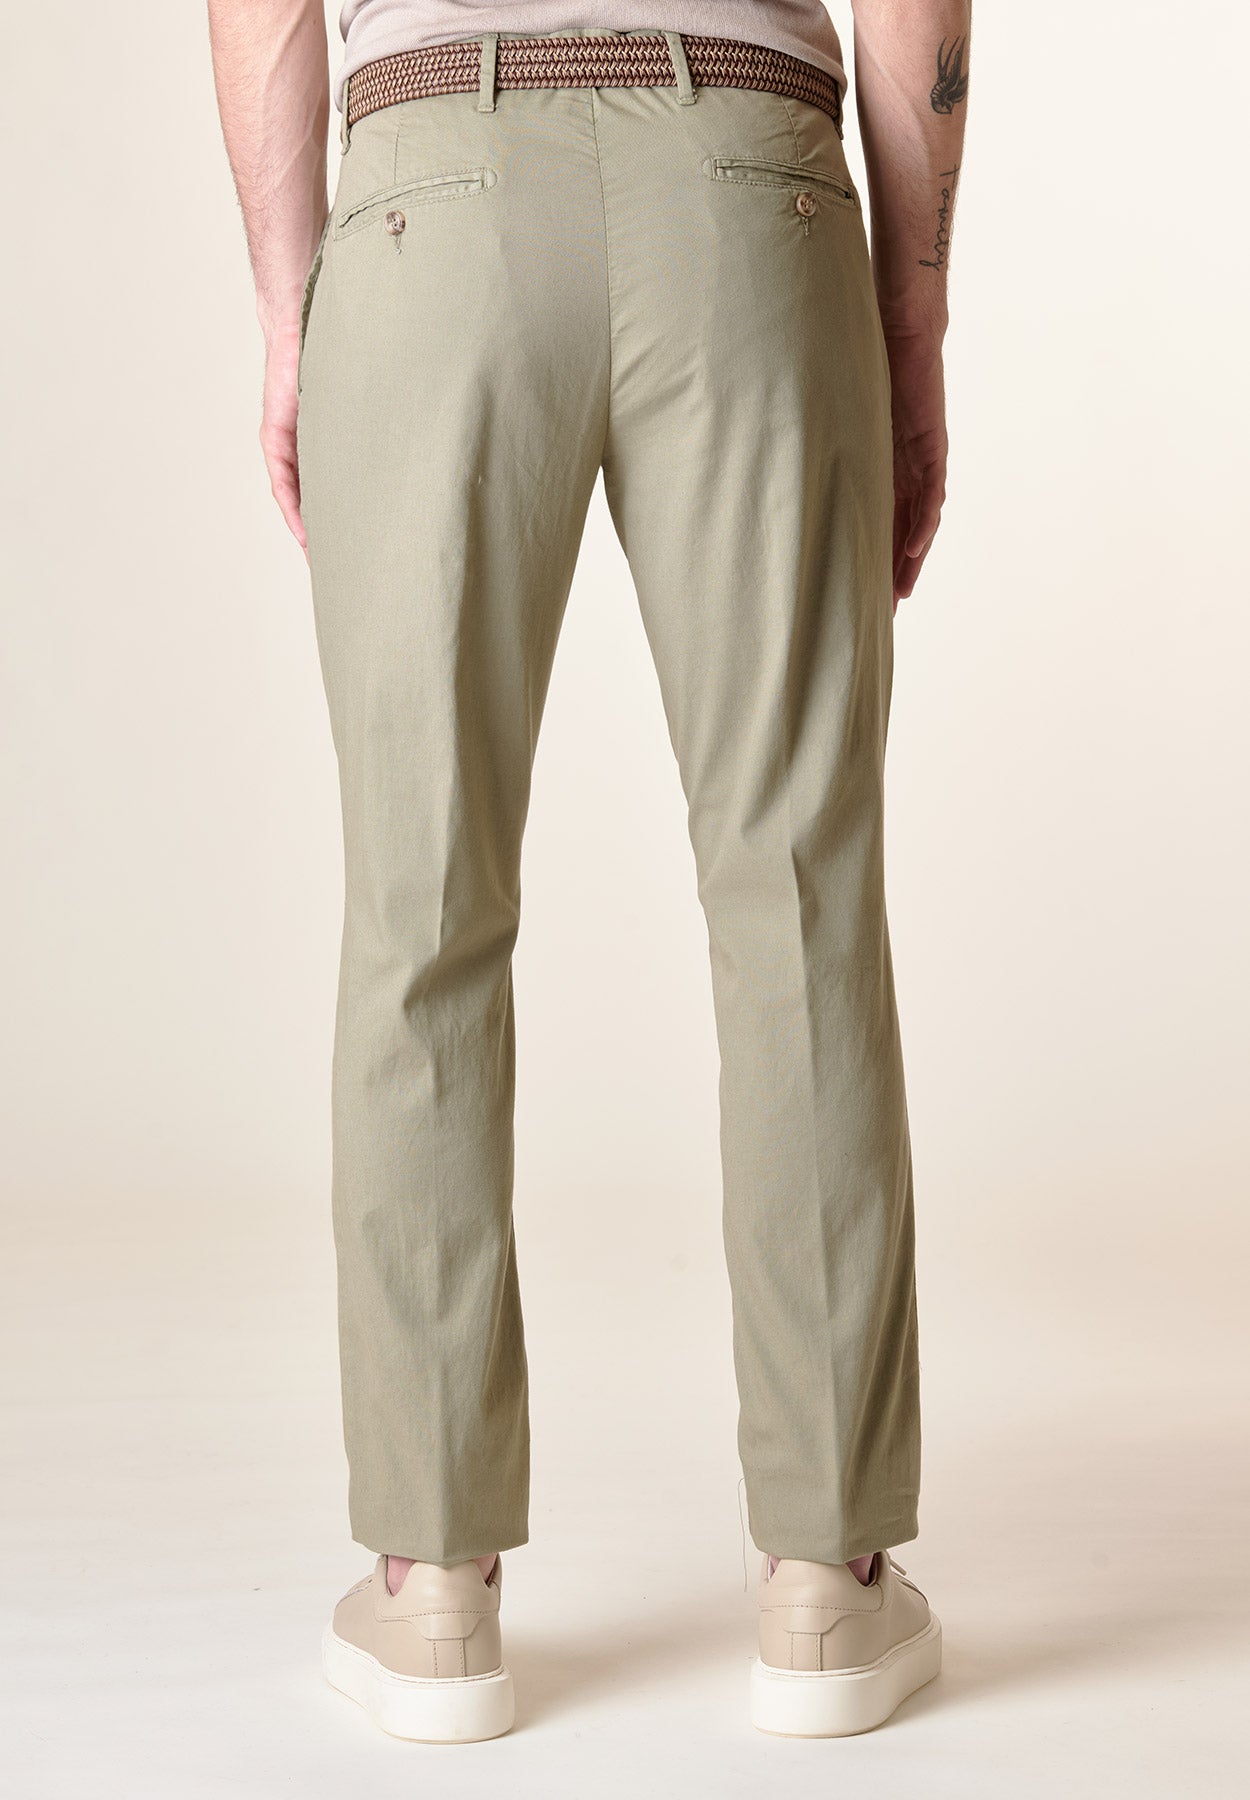 Salbeifarbene Hose aus Stretch-Baumwolle mit normaler Passform